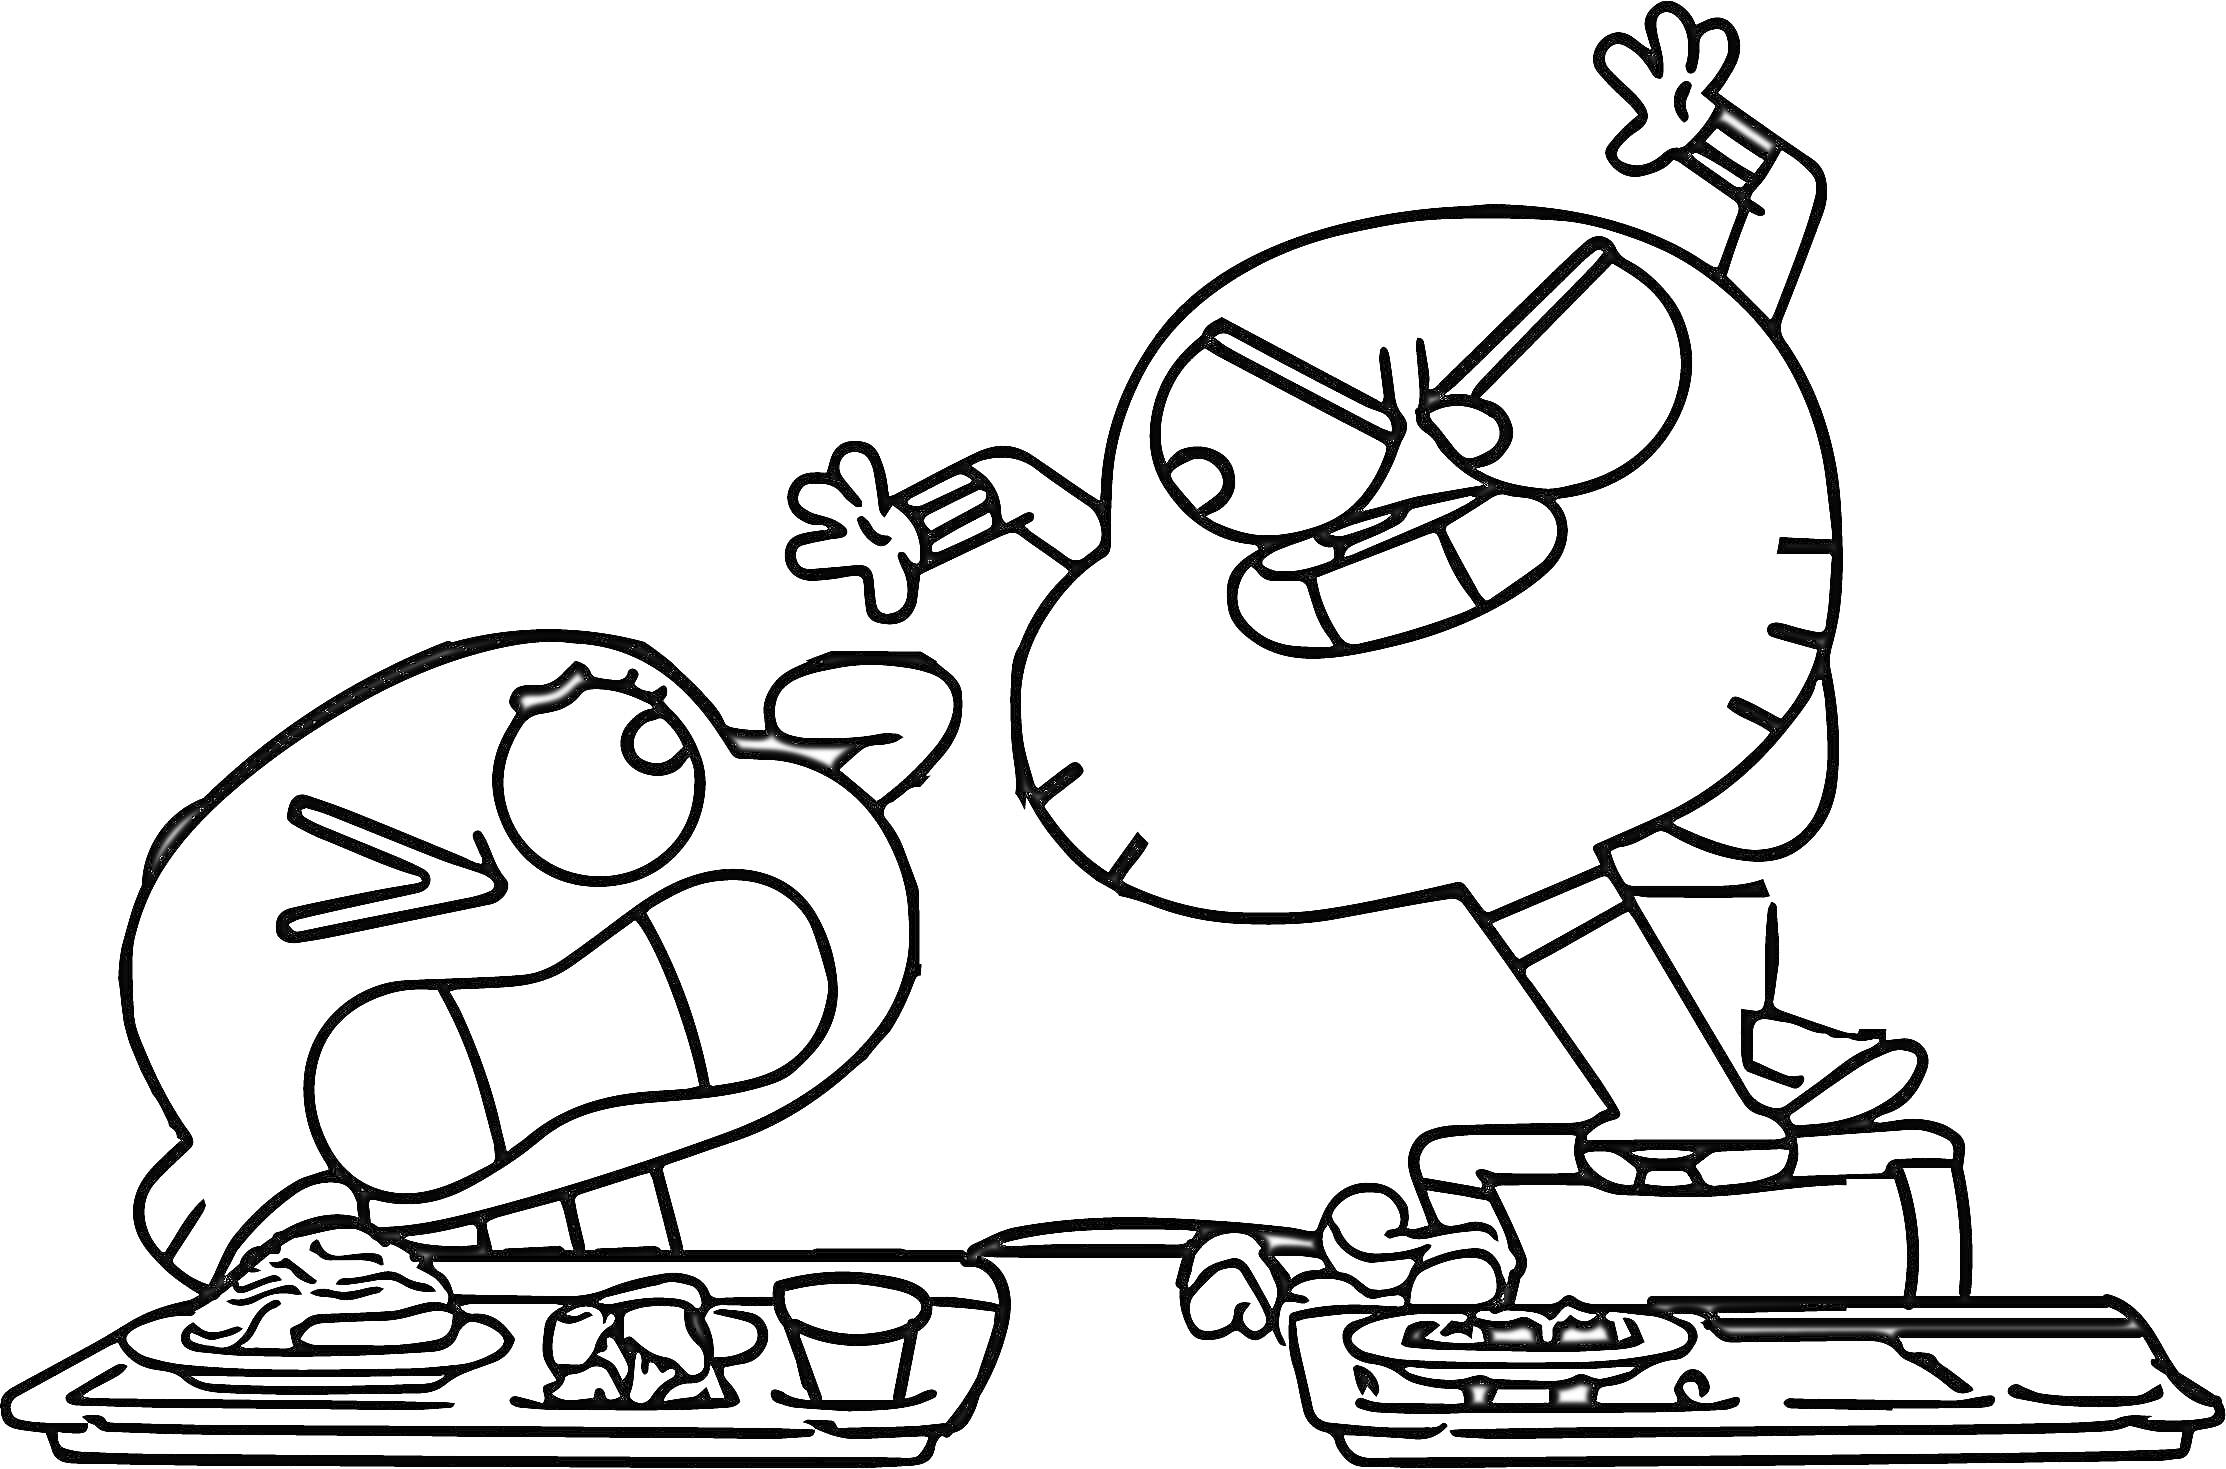 Раскраска Гамбол и Дарвин ссорятся в столовой, в центре изображены два персонажа: один сидит за столом, а второй стоит на стуле с поднятой рукой, на столах лежат подносы с едой